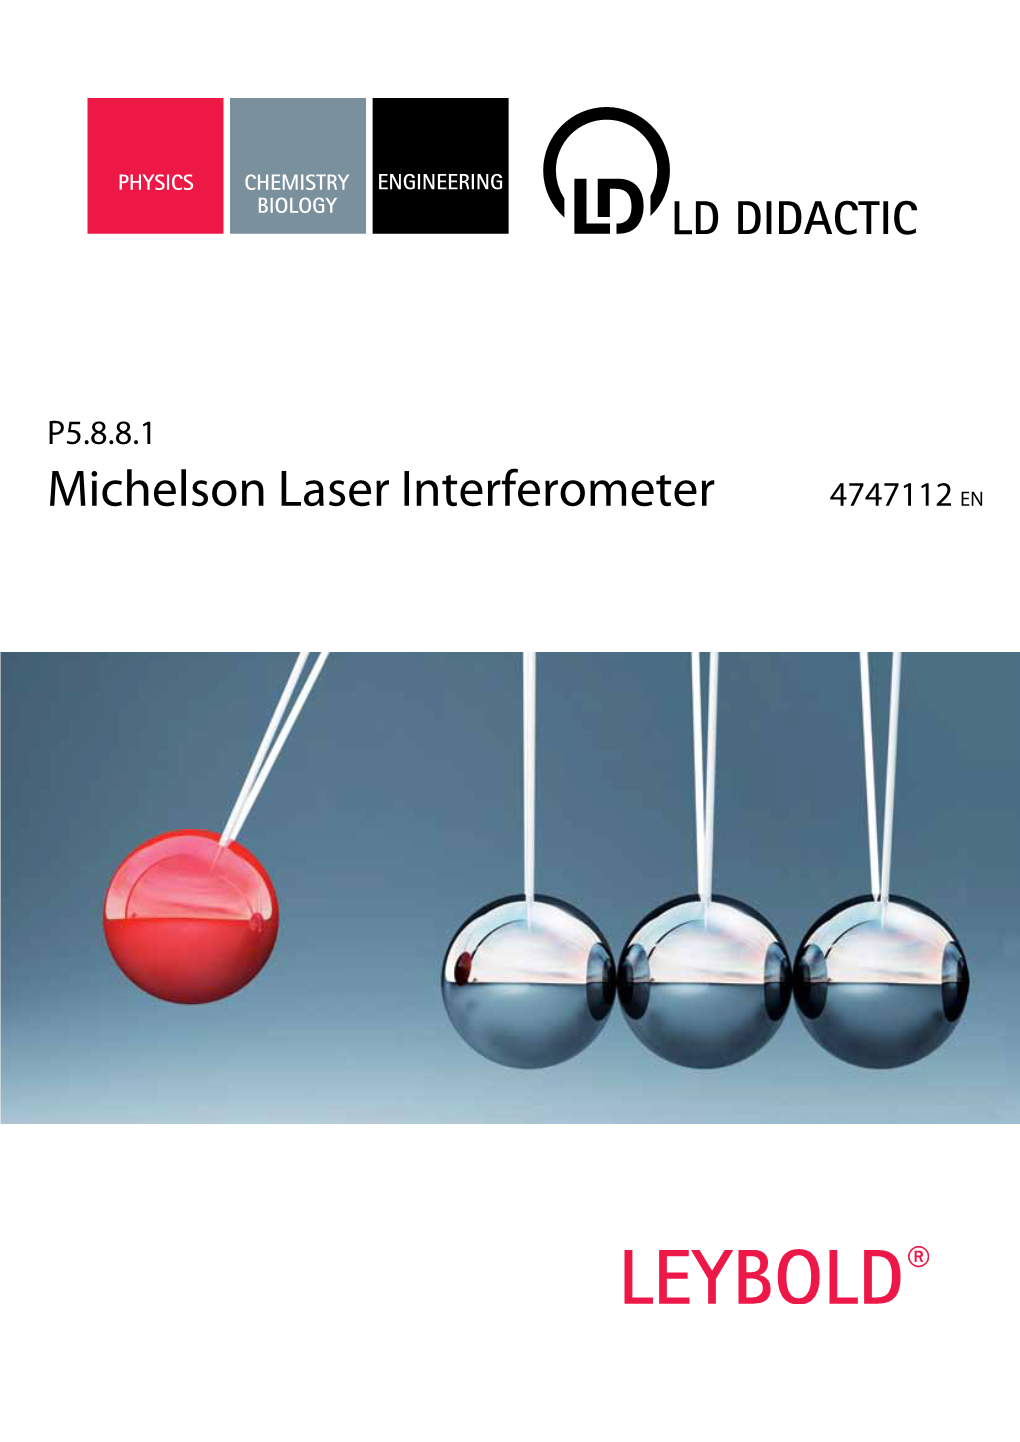 Michelson Laser Interferometer 4747112 EN